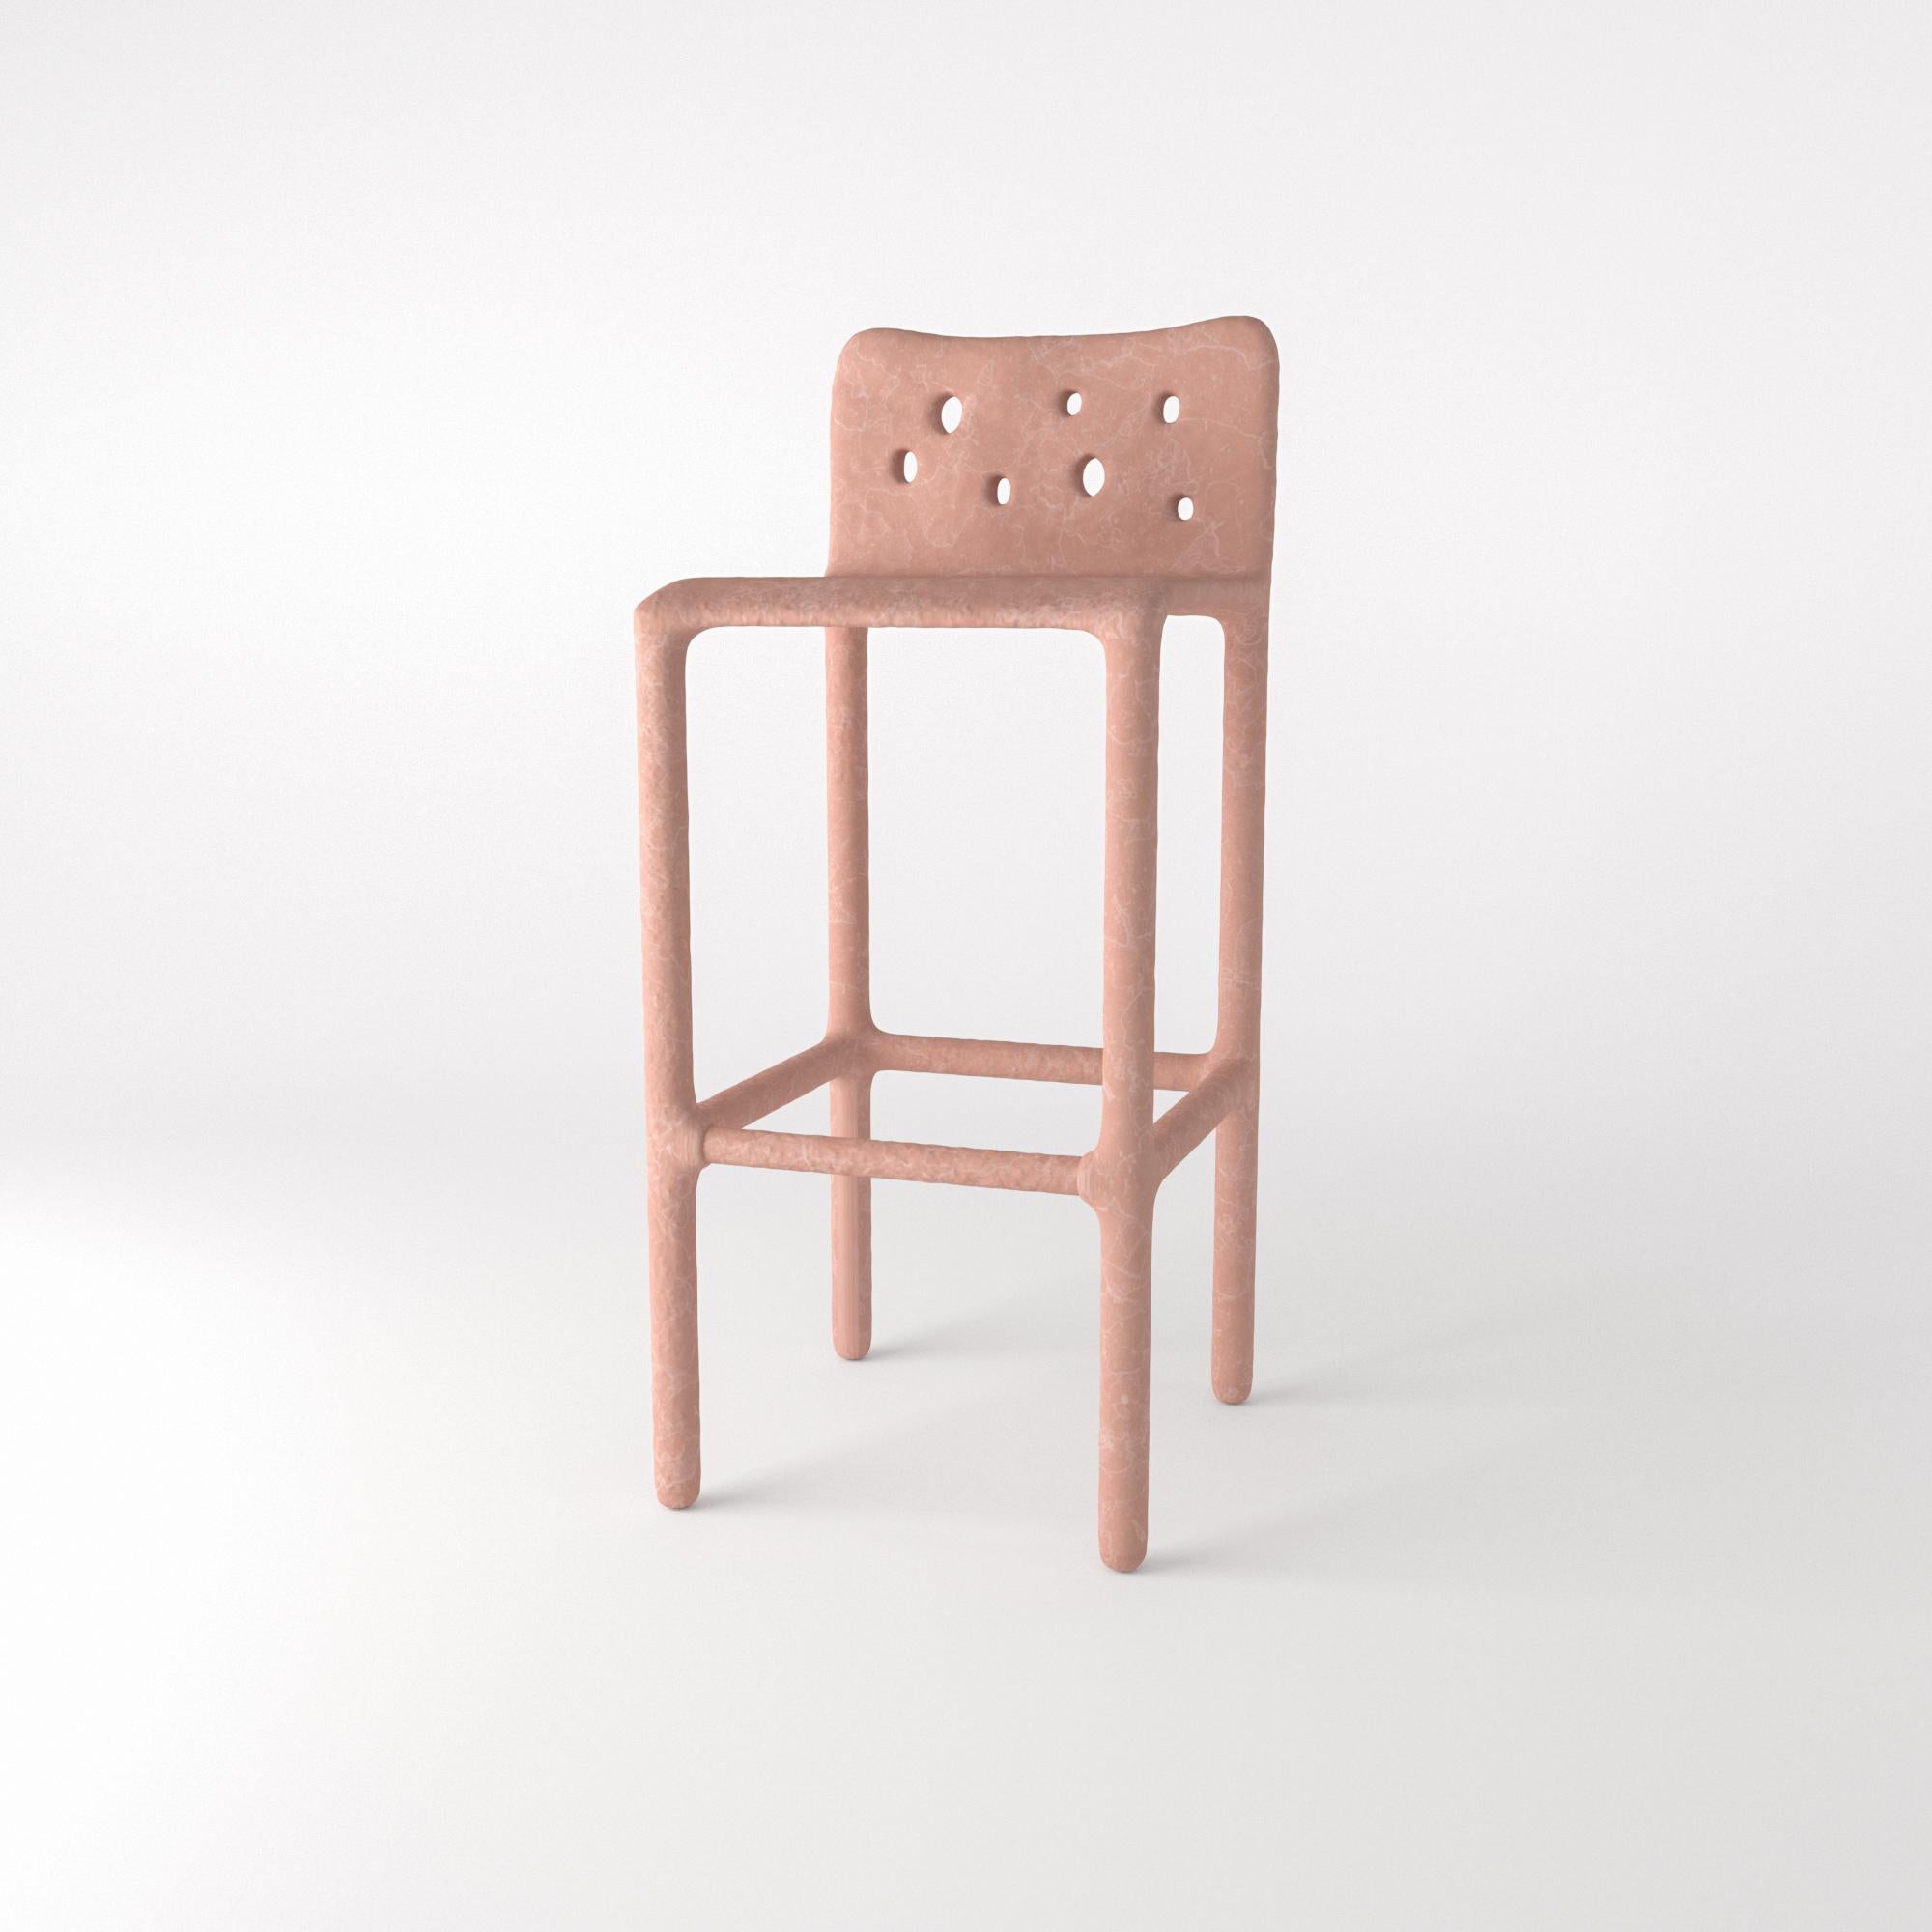 Sky Blue Sculpted Contemporary Chair by FAINA 1